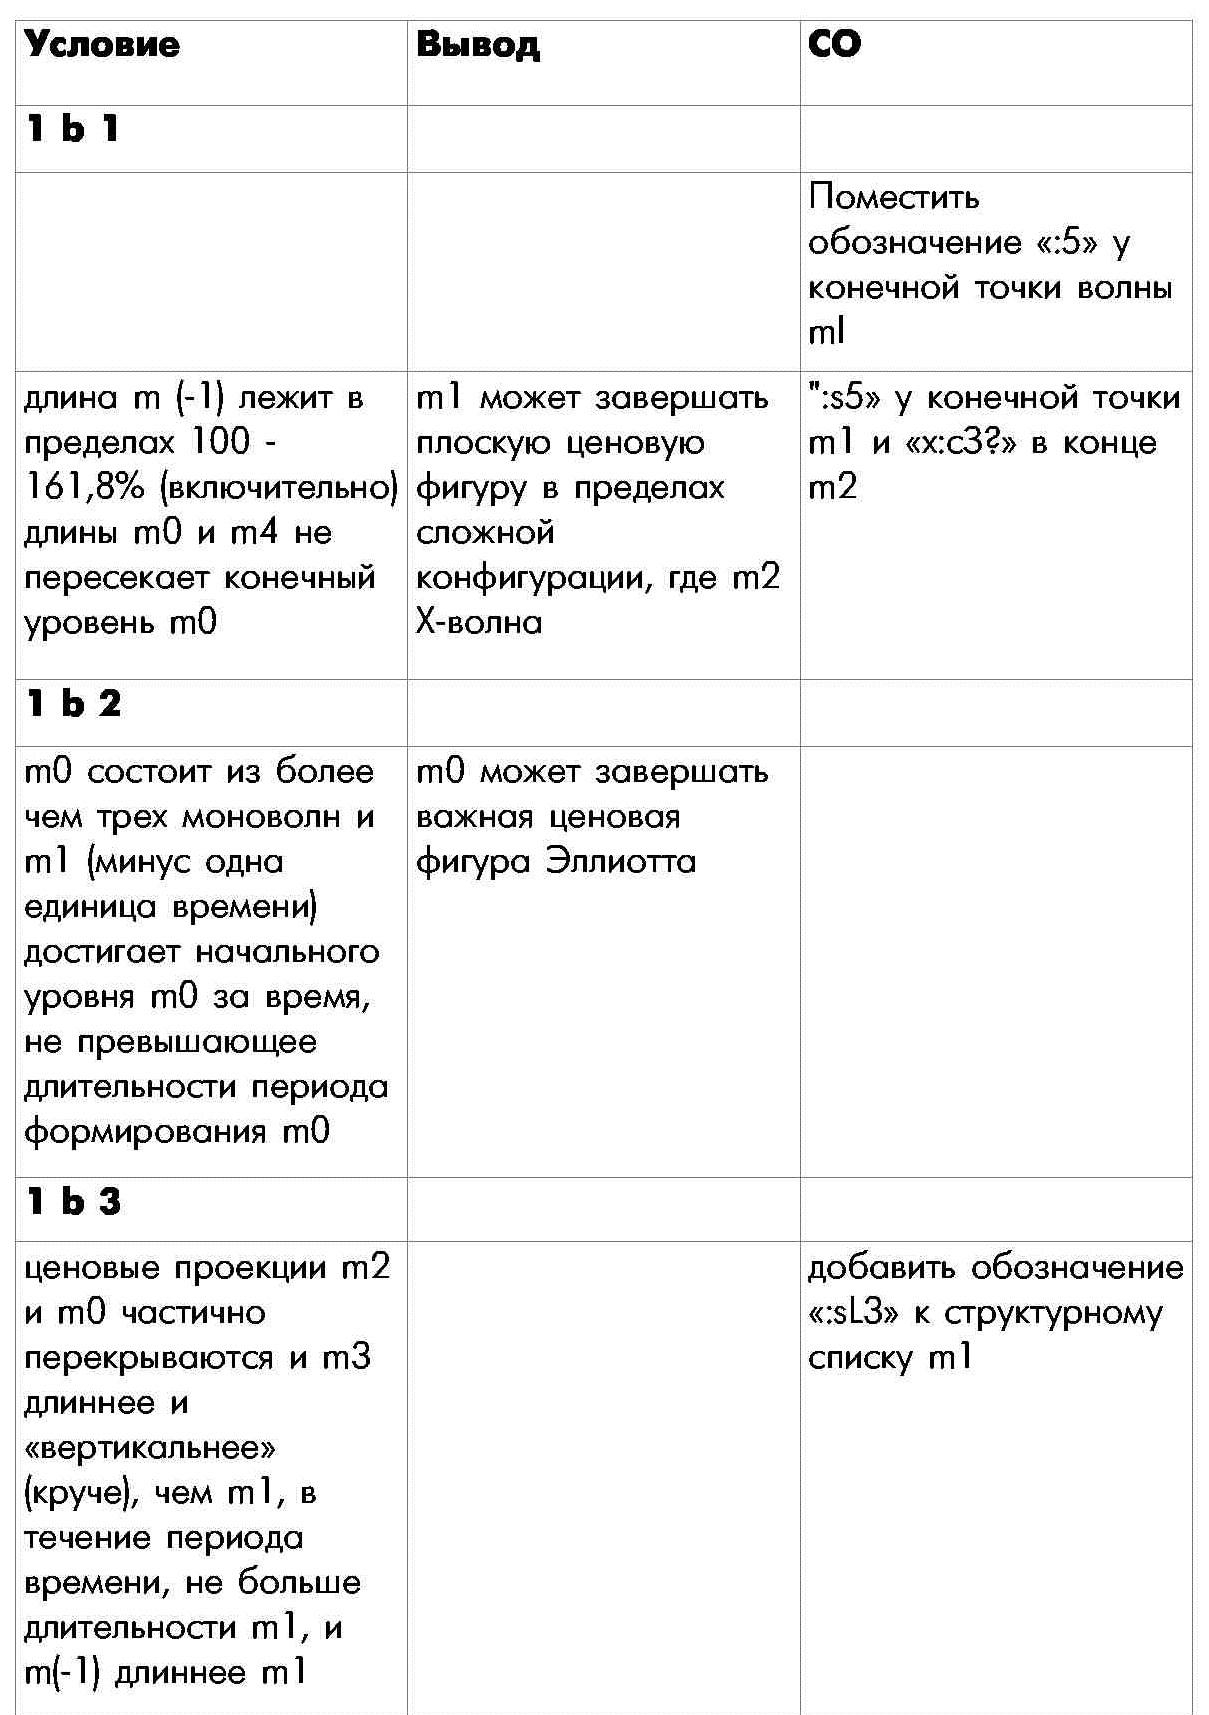 Правило 1 определения внутренней структуры моноволны четвертая часть таблицы